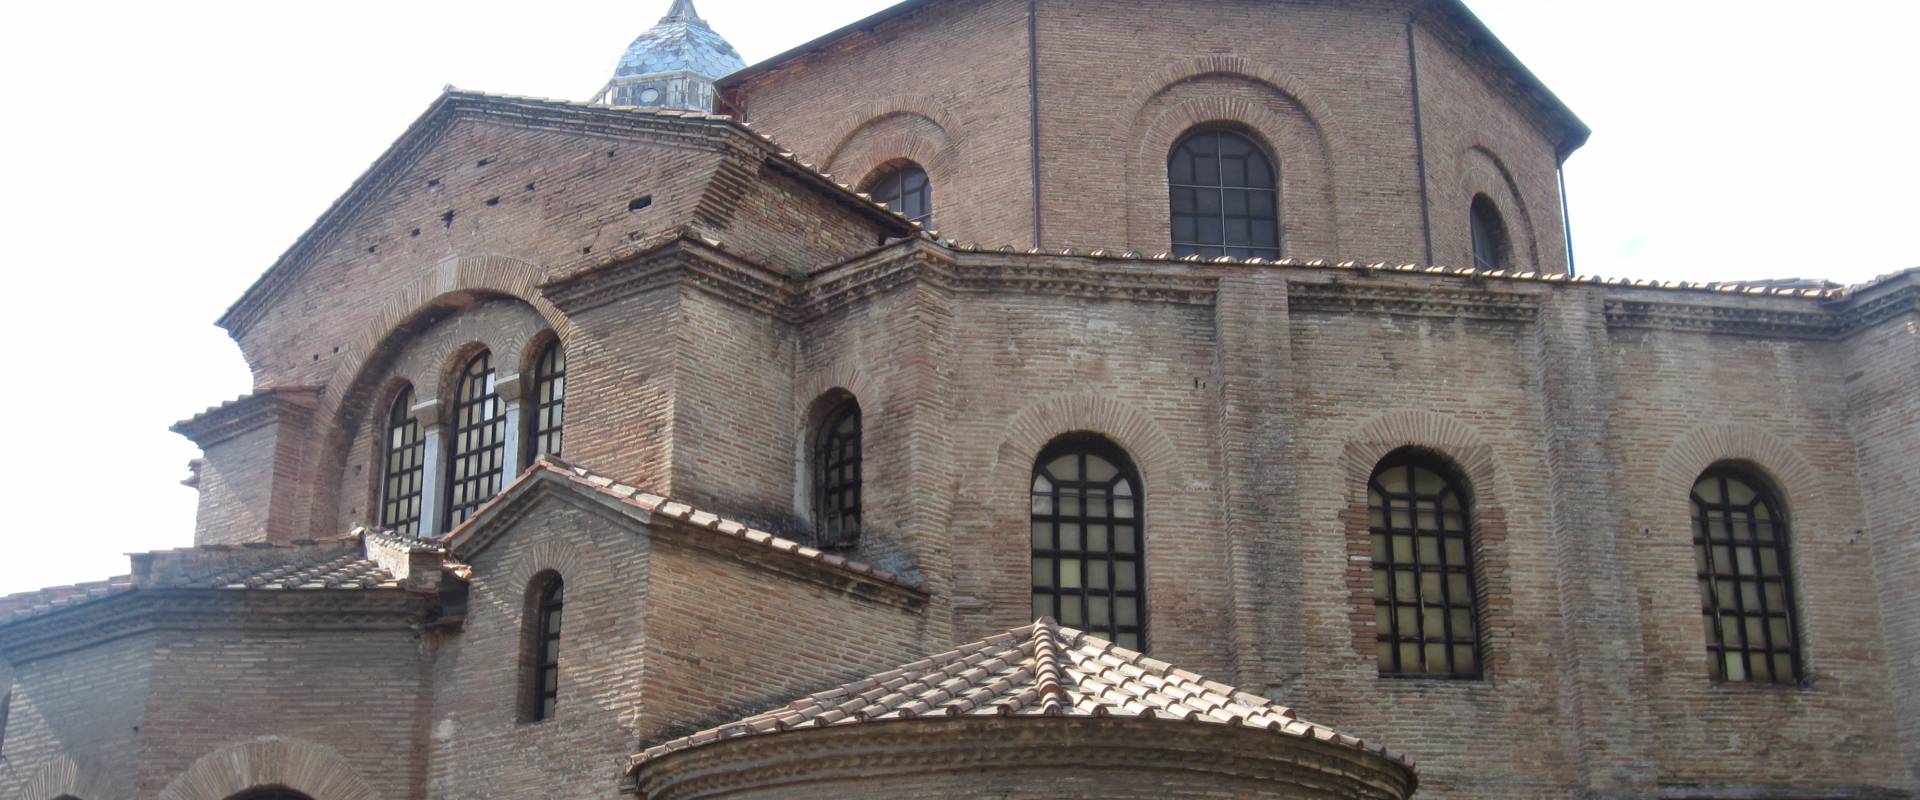 Basilica di San Vitale - dettaglio facciata foto di Ebe94